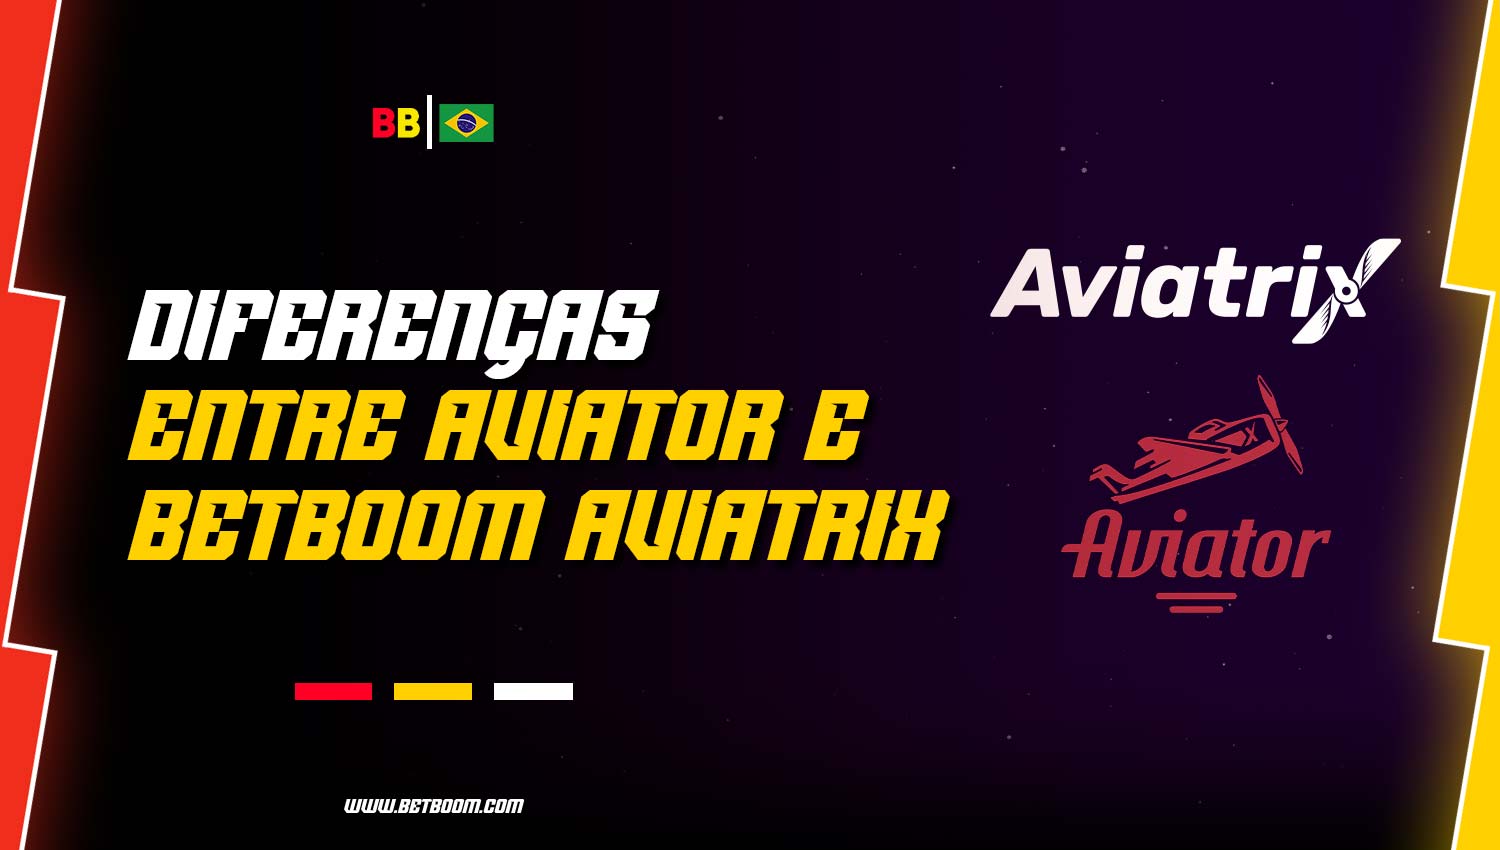 Comparação entre o jogo AviatriX e o Aviator, ambos disponíveis na plataforma BetBoom.